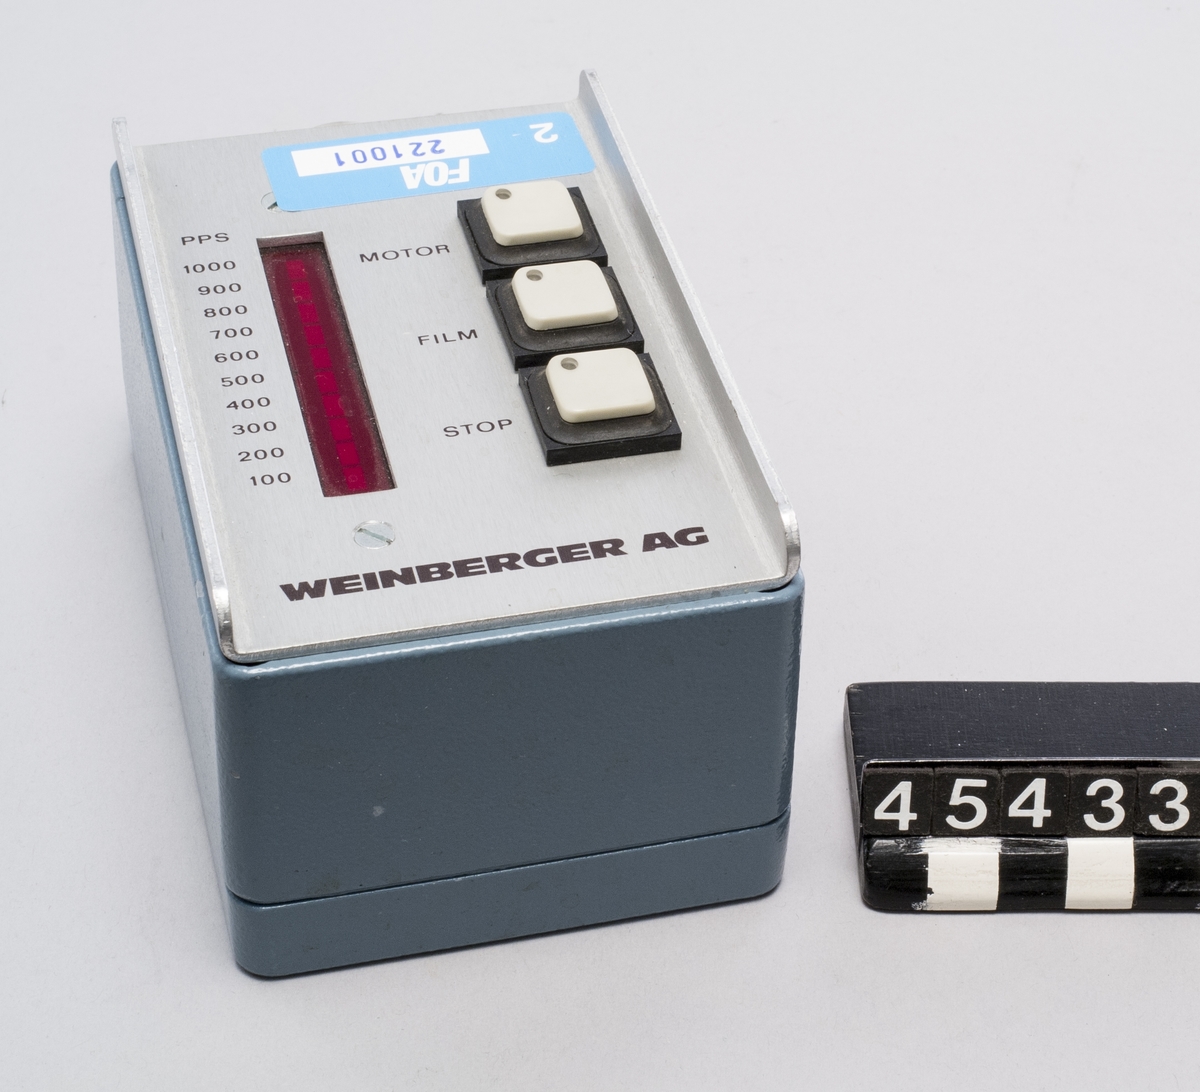 För anslutning till styrutrustning  TM45431, inställbar 100-1000 PPS, knappar för Motor-Film-Stop  Märkt FOA 2 221001 Tillverkare Weinberger AG